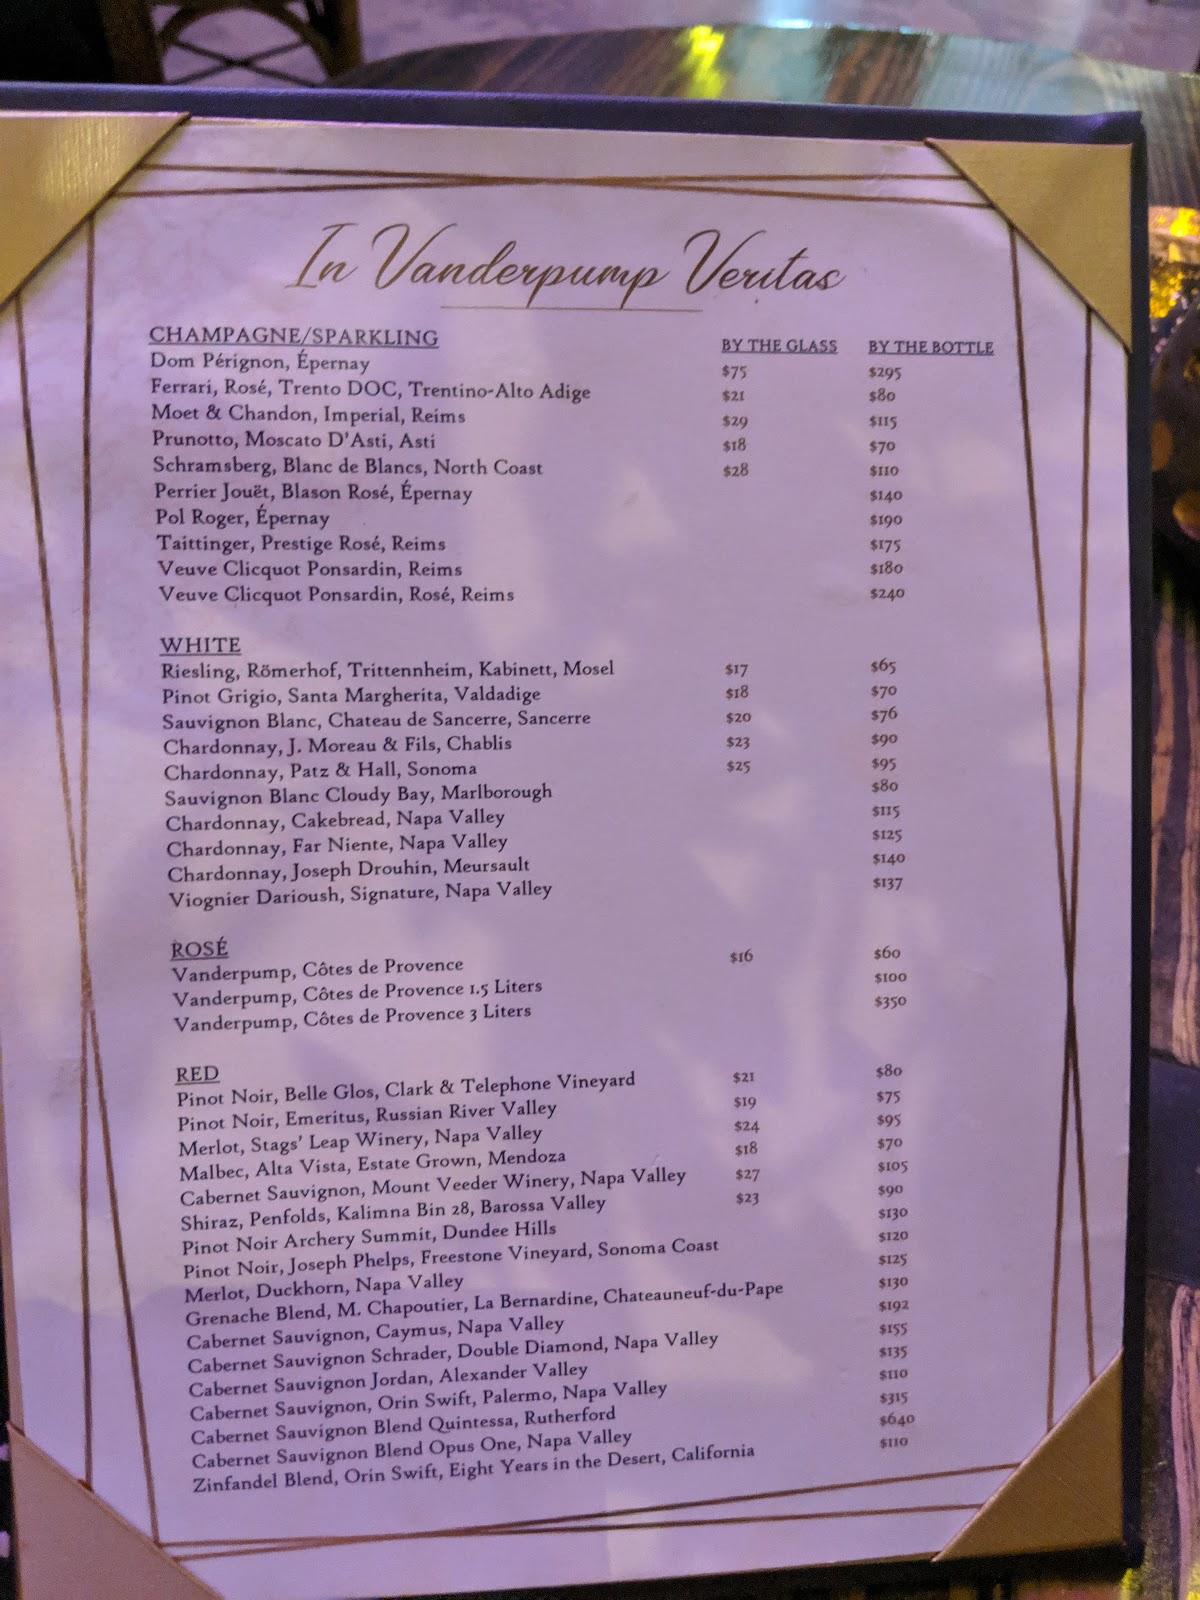 See the Vanderpump Cocktail Garden menu - Eater Vegas